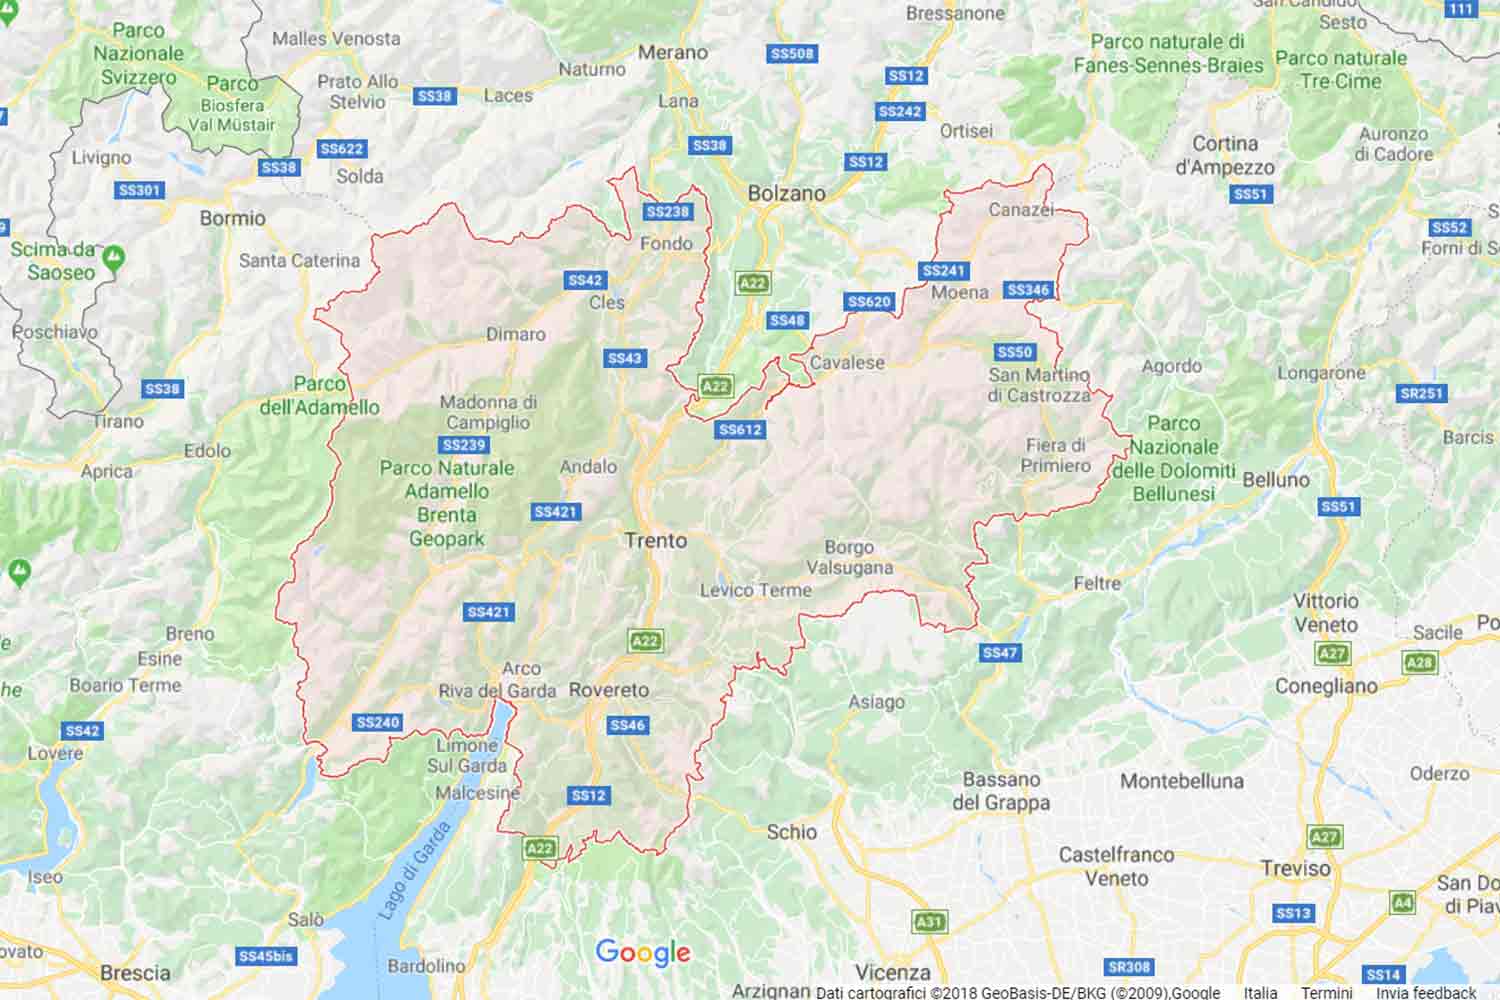 Trentino - Trento - Carisolo Preventivi Veloci google maps